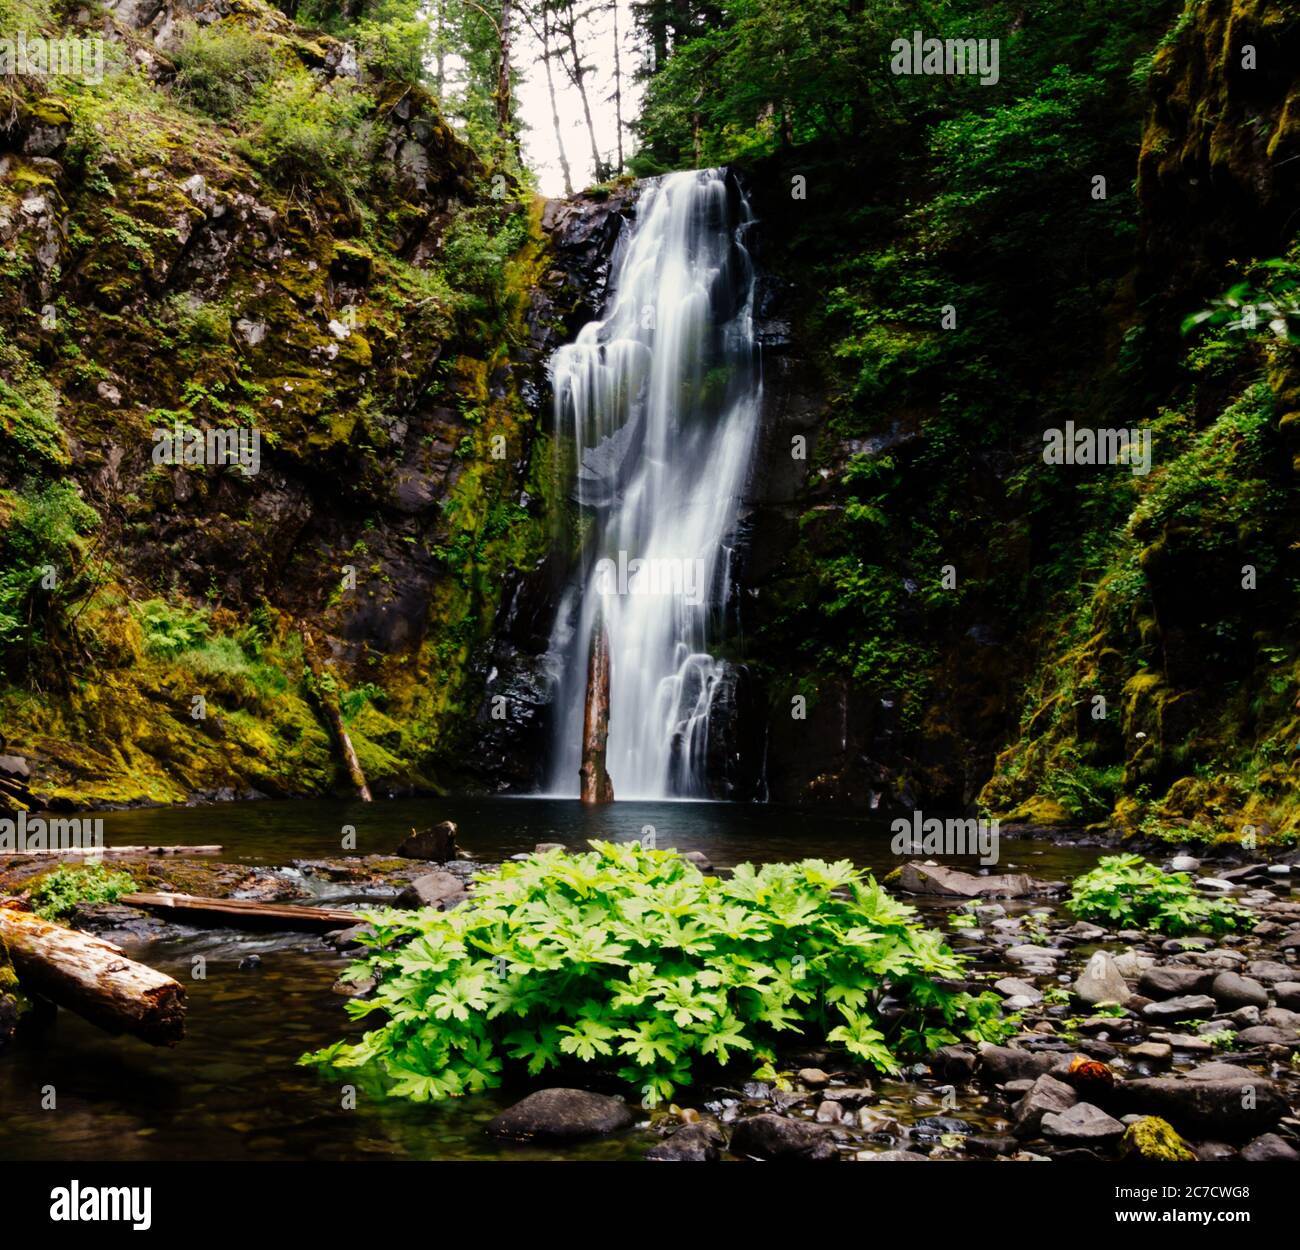 Wunderschöner Wasserfall, der auf einer Klippe von grünen Bäumen umgeben ist Und Pflanzen Stockfoto